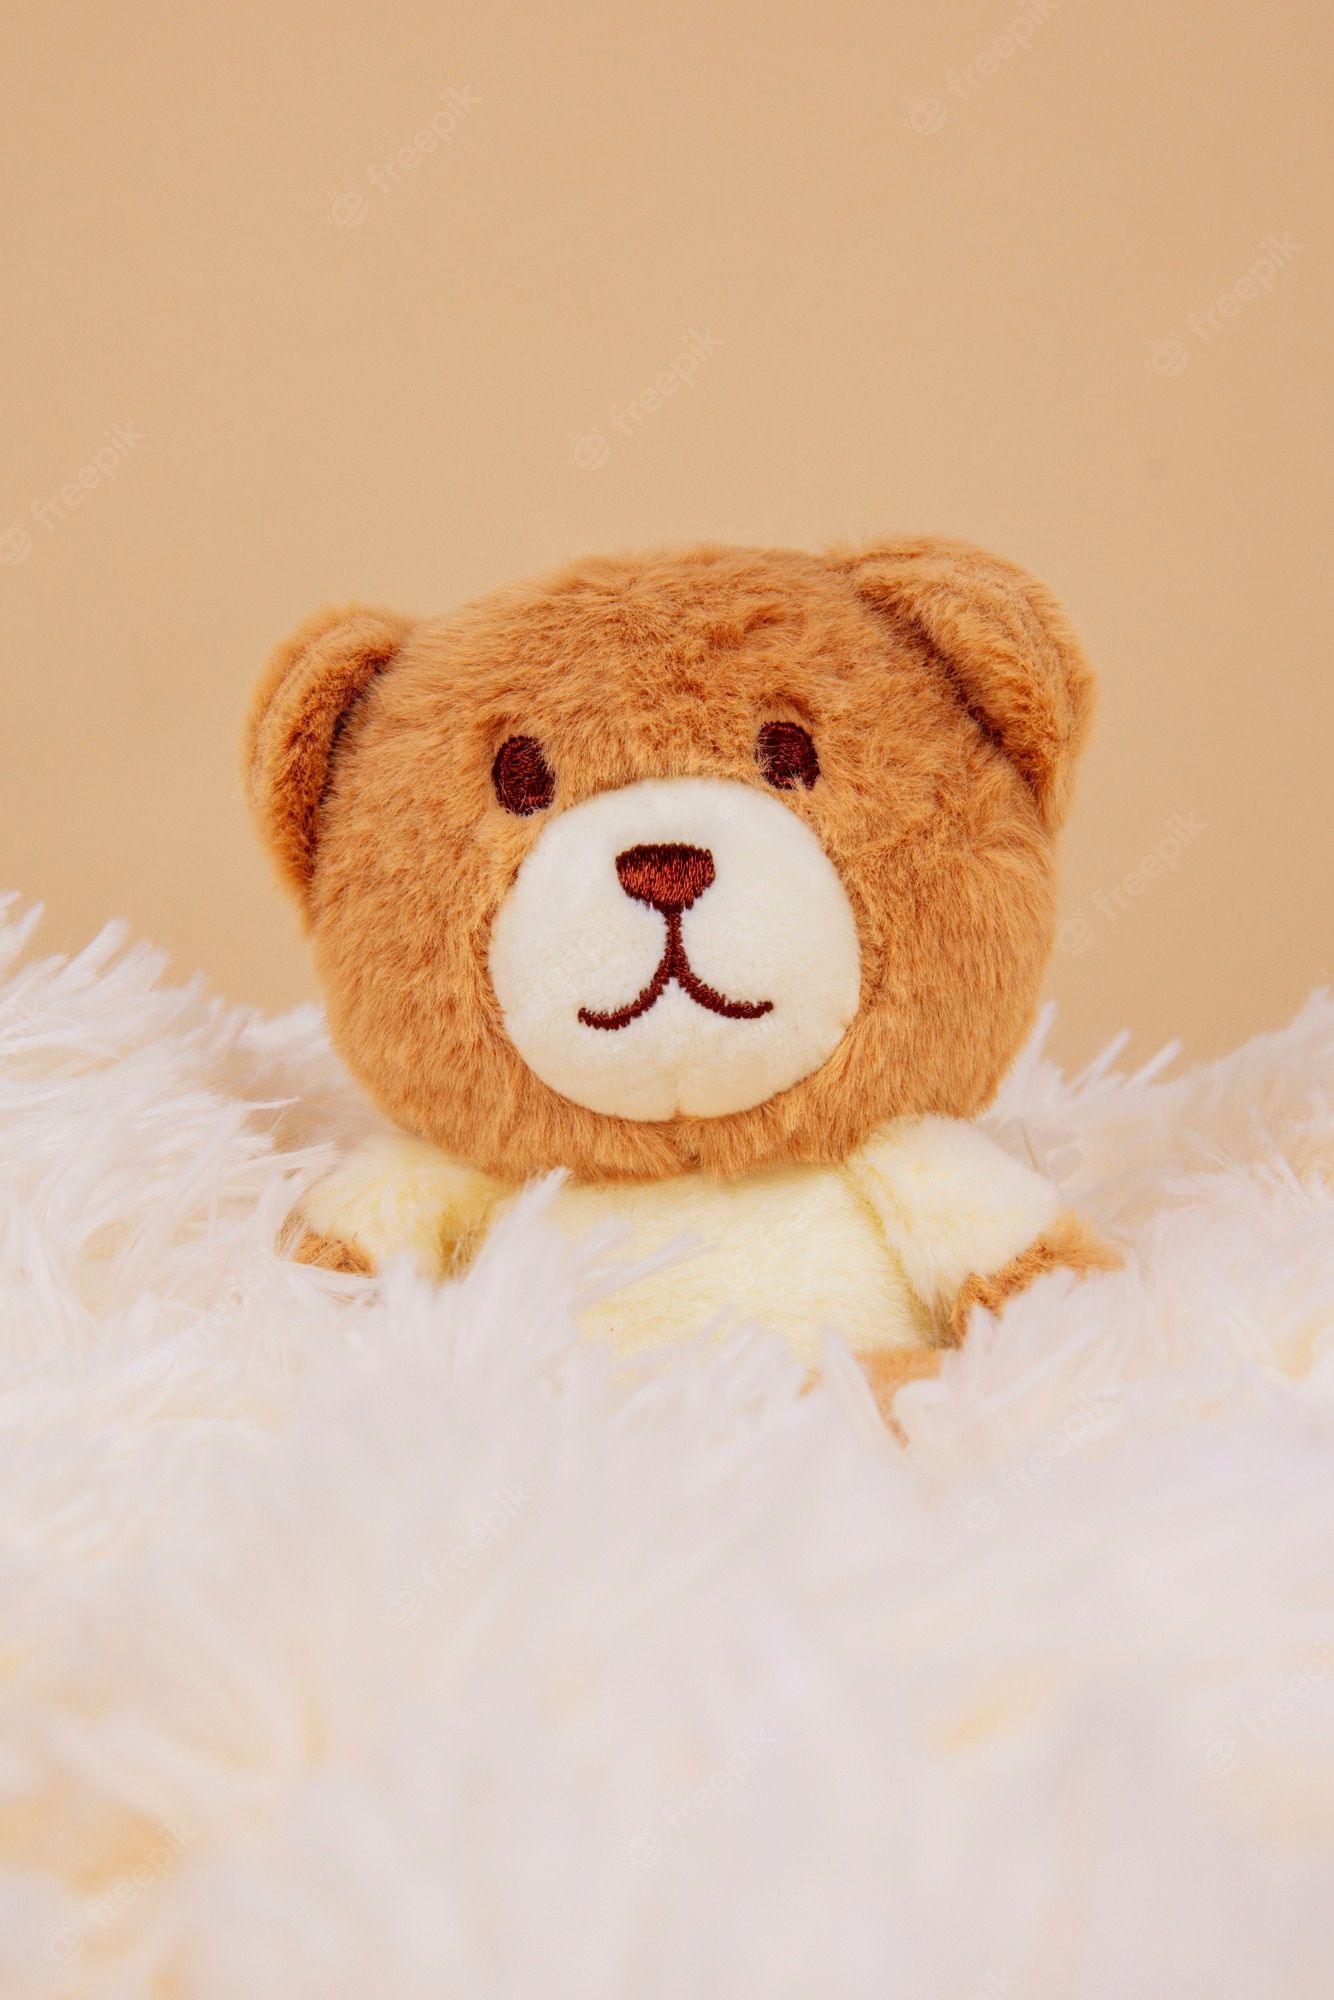 A brown teddy bear sitting on a white fluffy blanket - Teddy bear